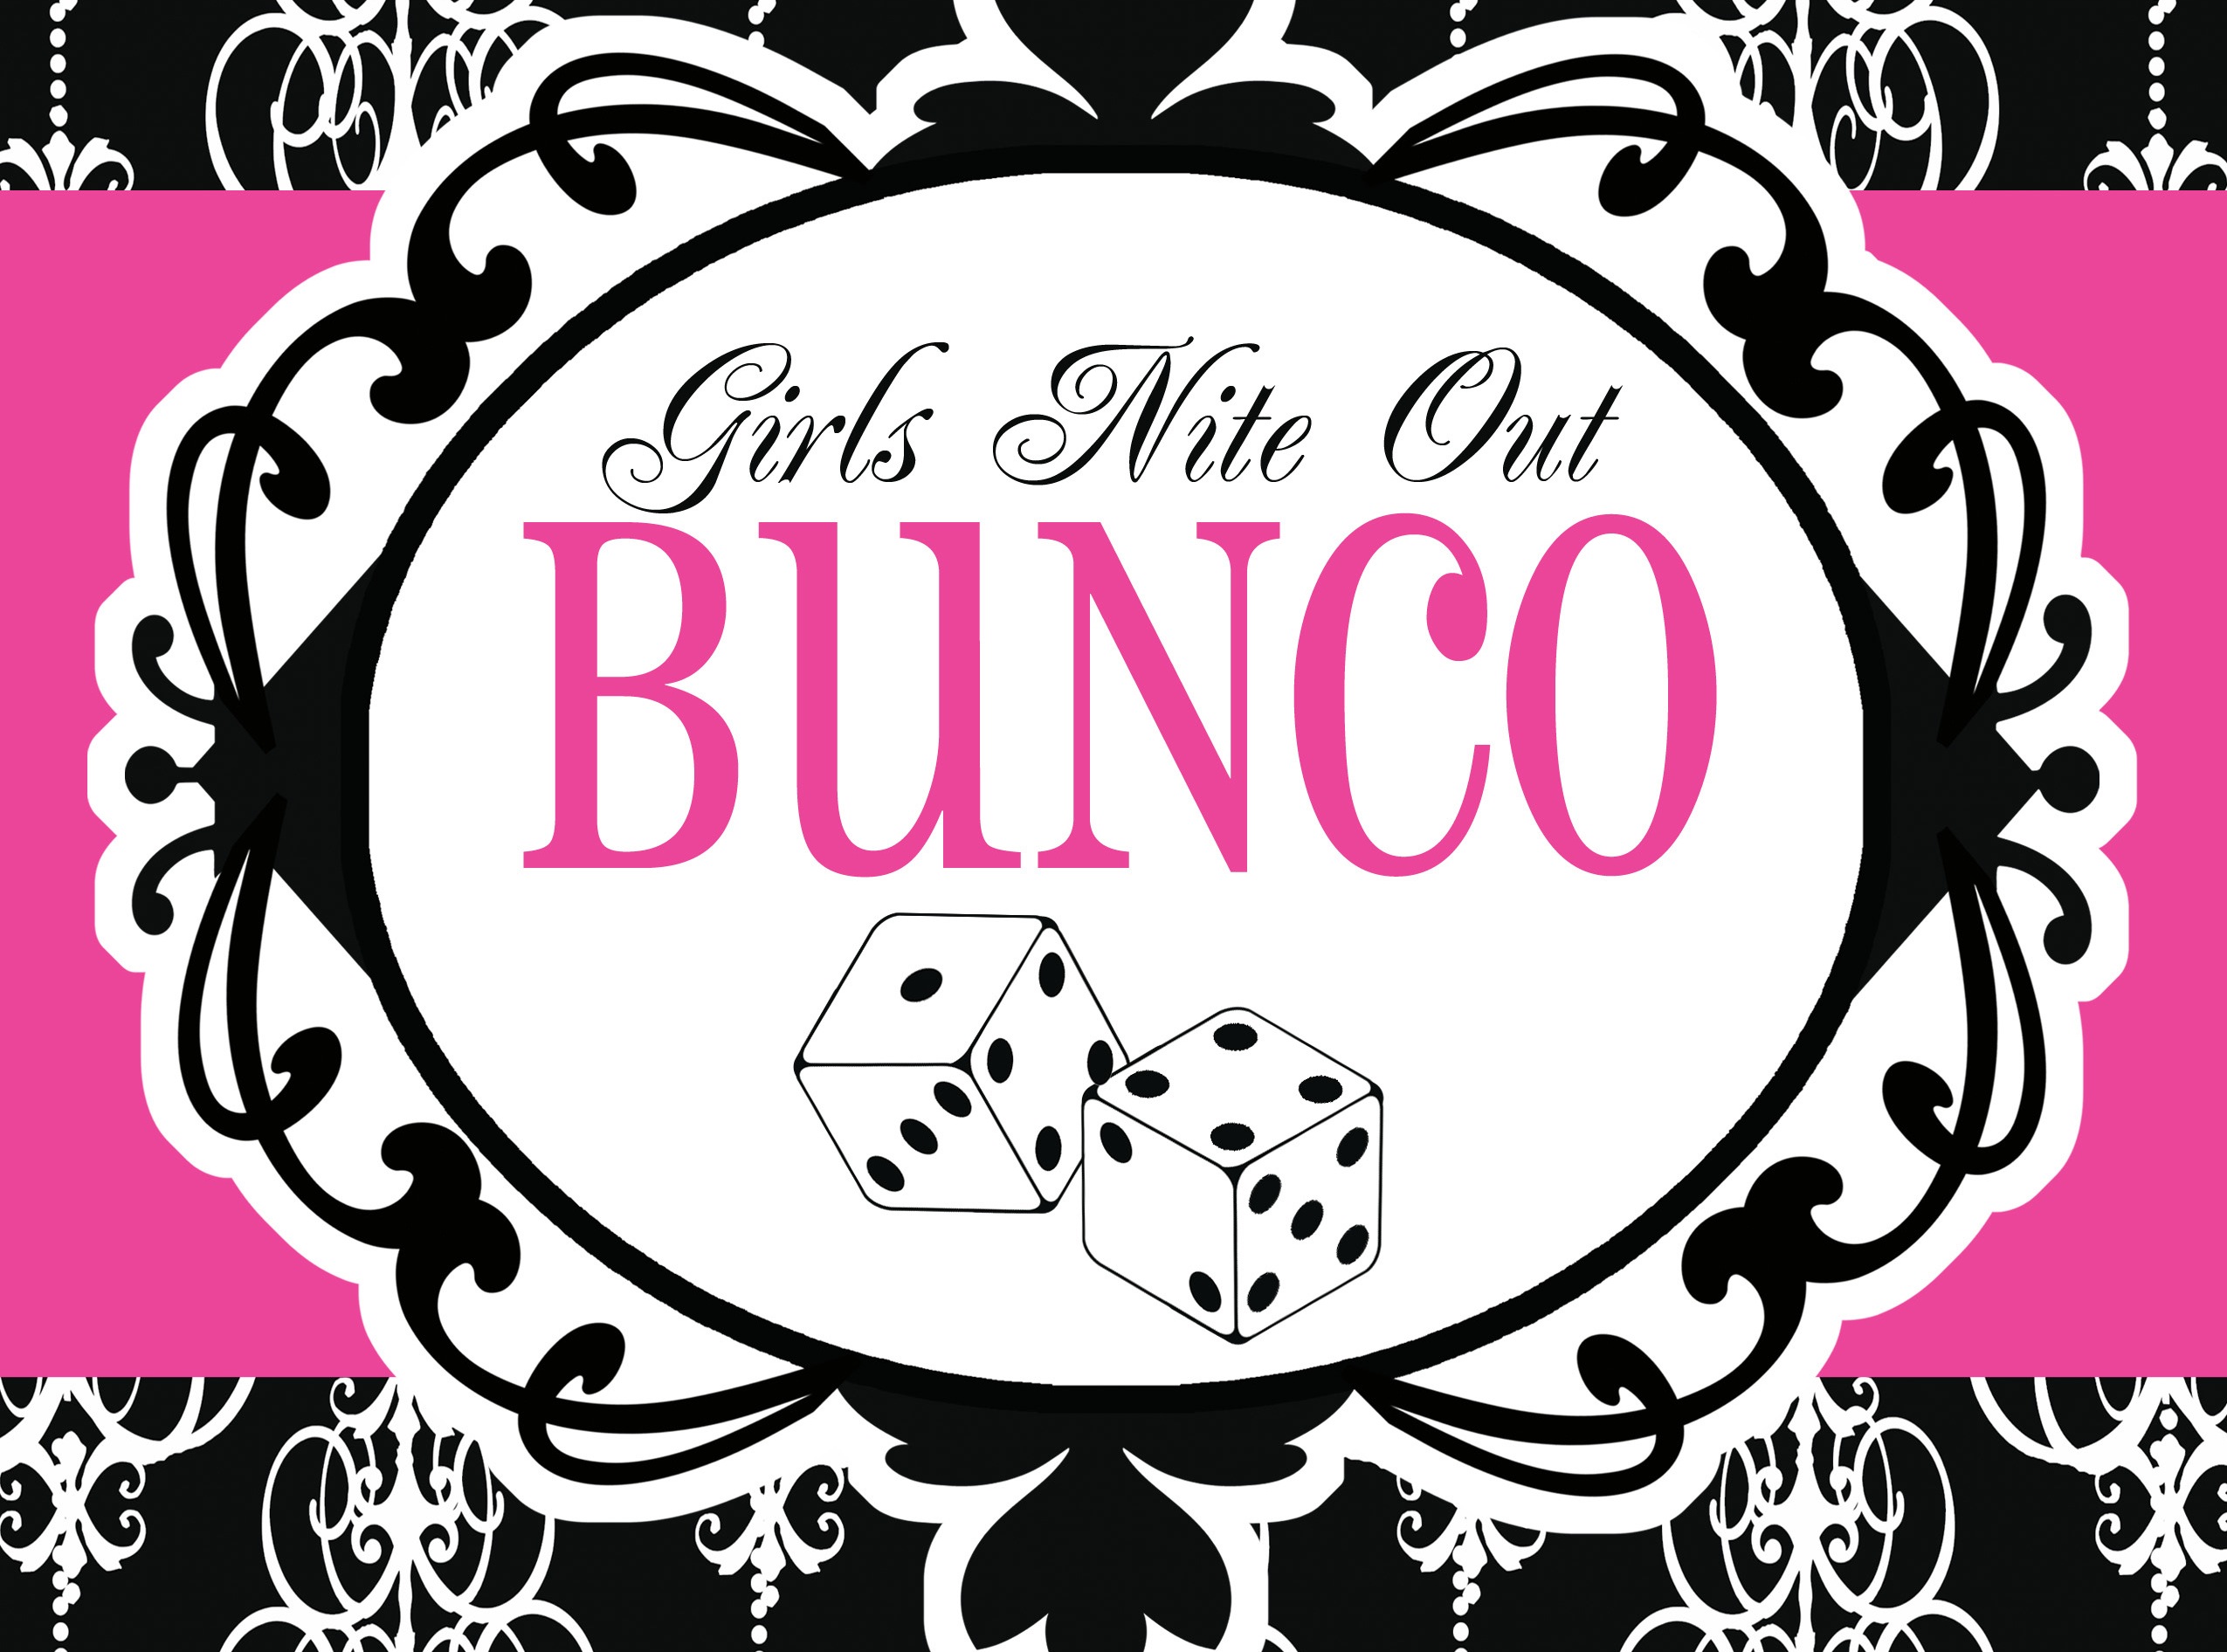 Let’s Play Bunco! – Thursday, June 27